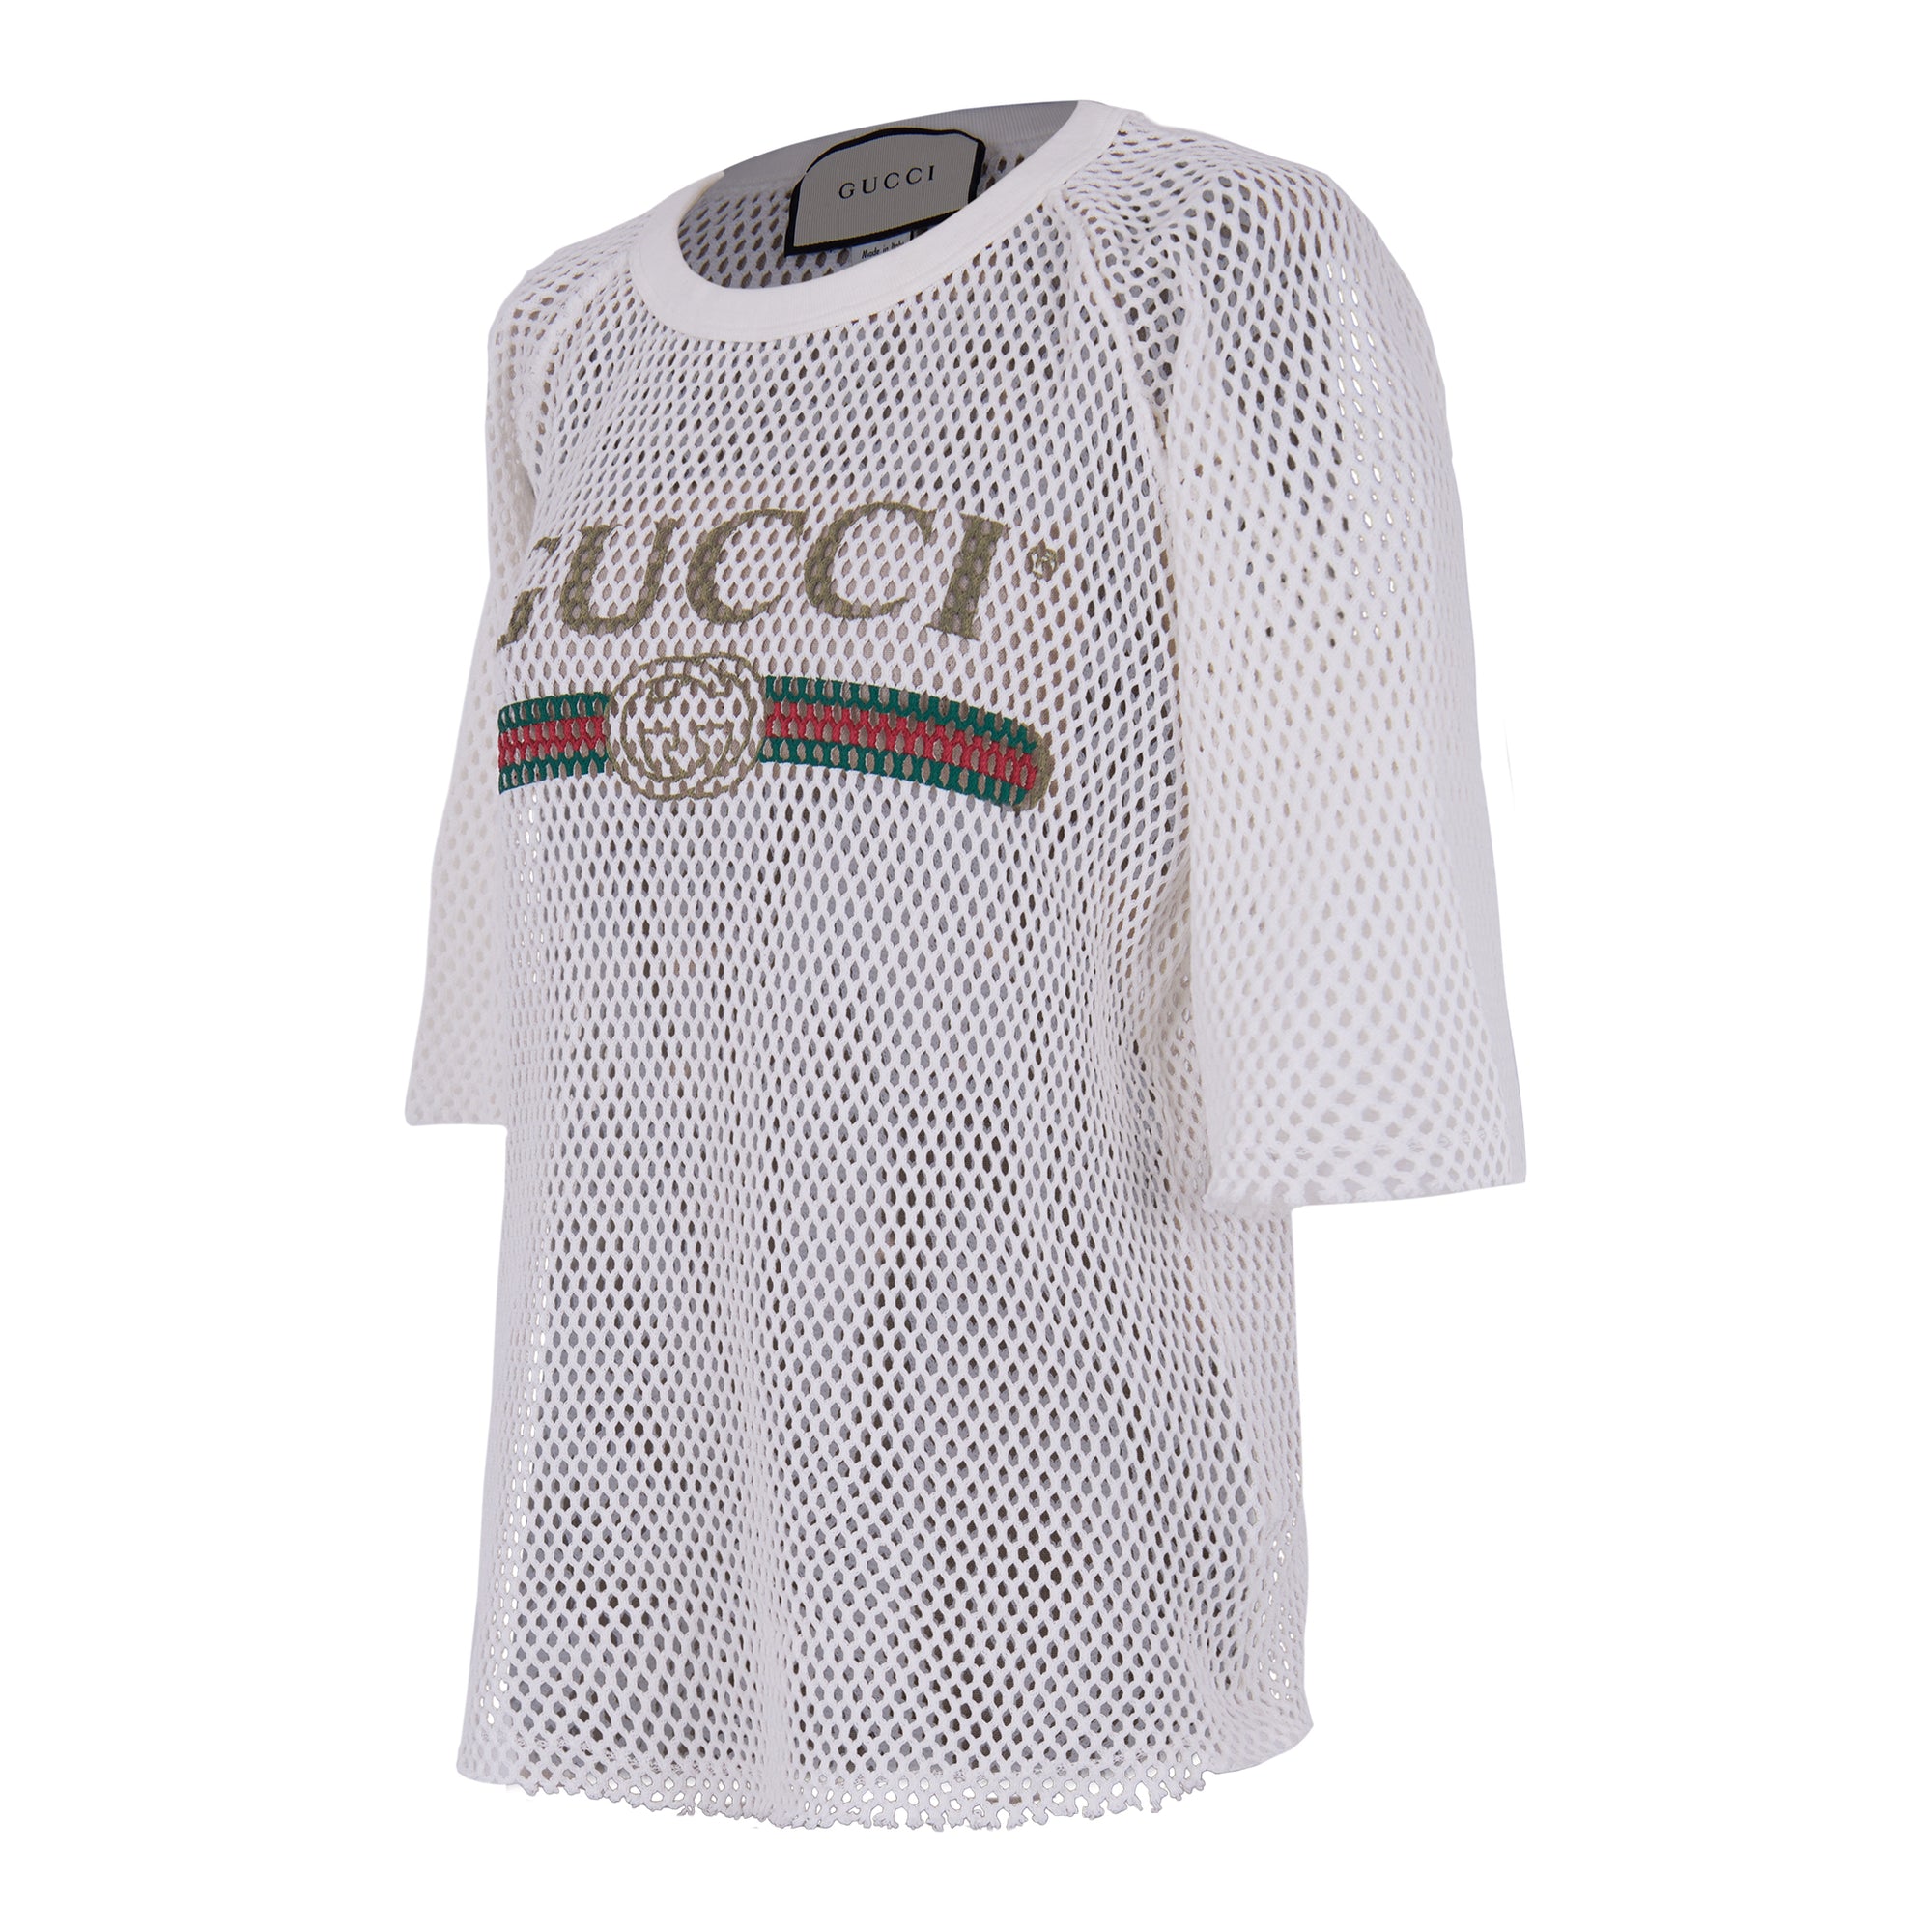 Gucci White Logo Print Cotton Mesh Tshirt